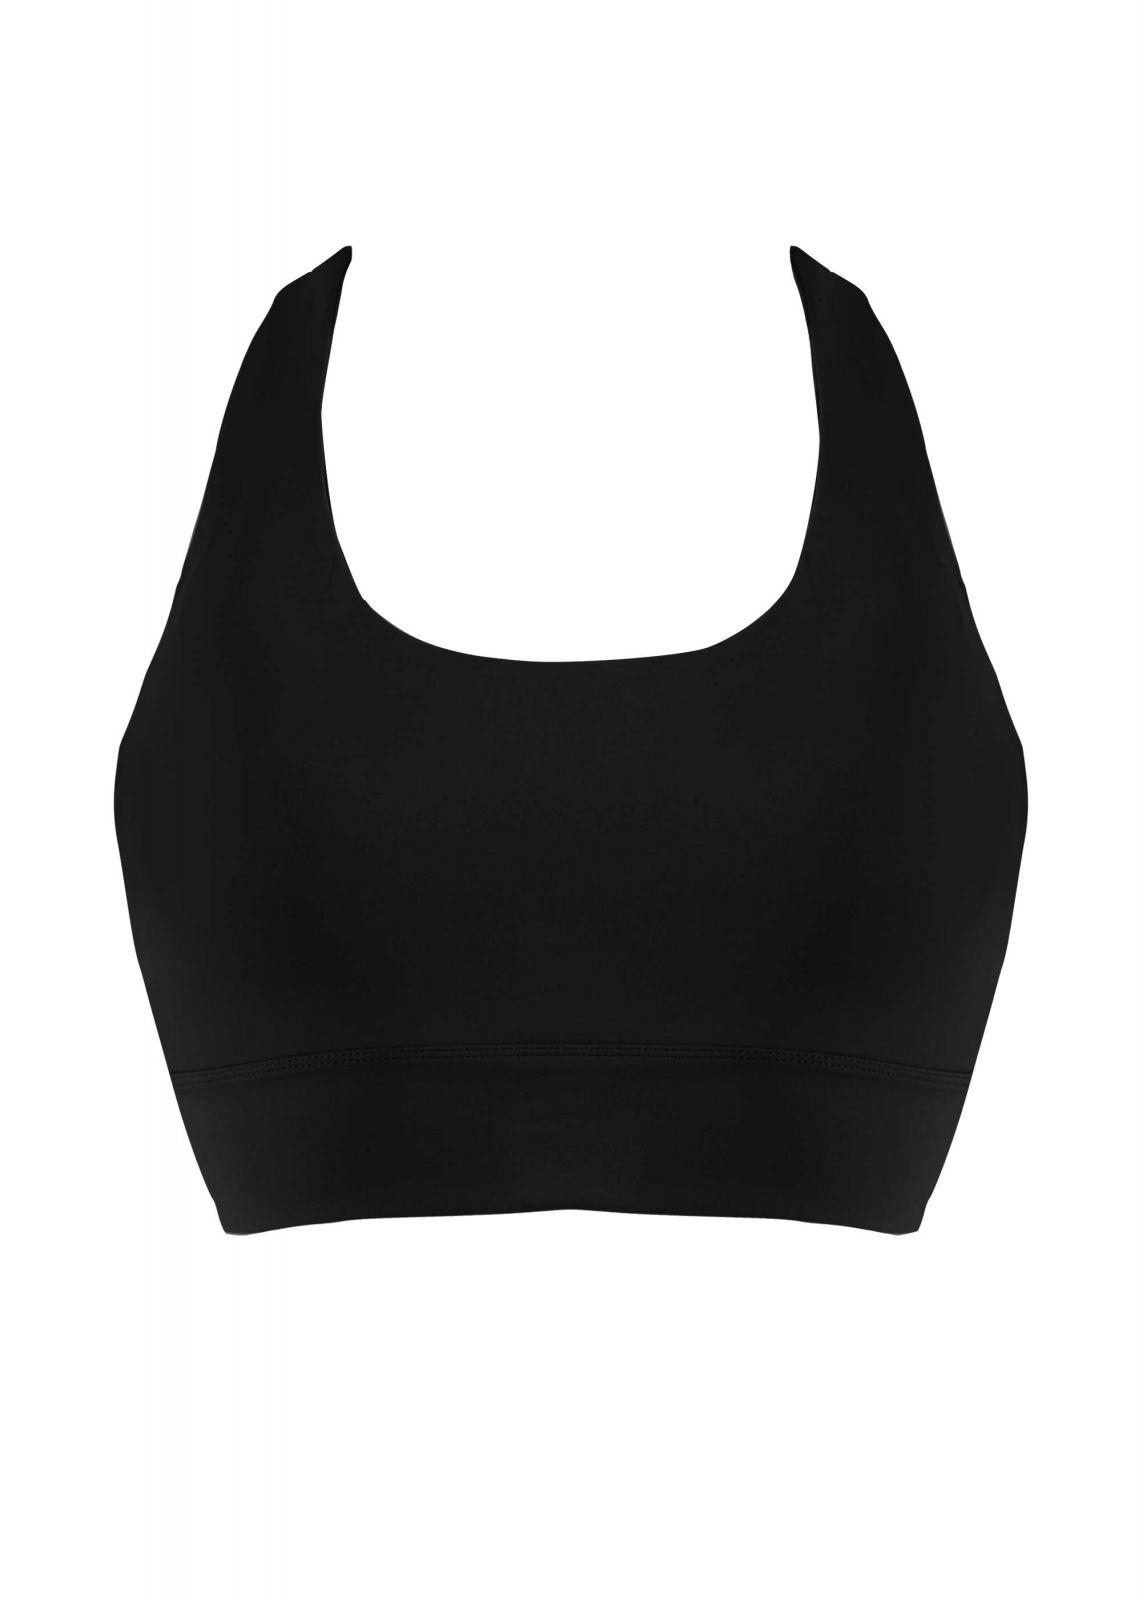 Γυναικείο αθλητικό μπουστάκι με ανοιγμα στην πλάτη ΜΑΥΡΟ - gsecret - 